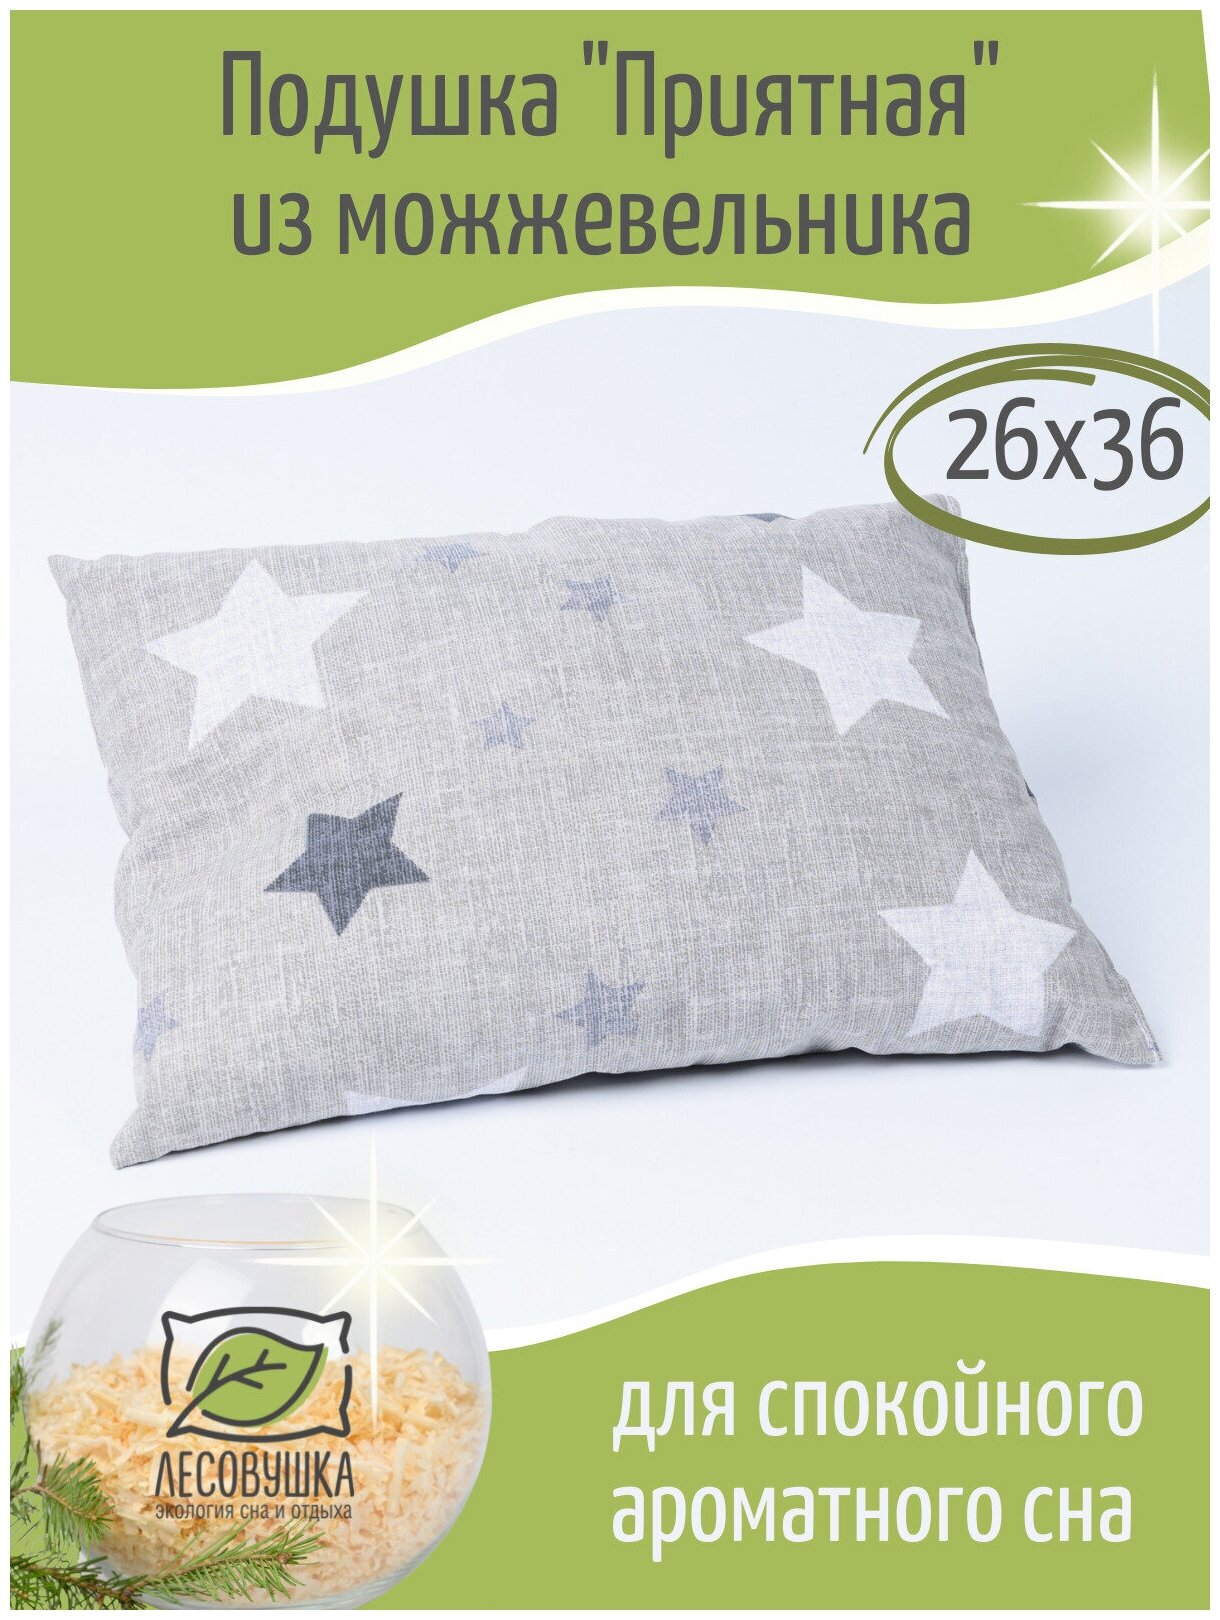 Ароматная подушка из стружки можжевельника "Приятная" для дома и бани для здоровья 26x36